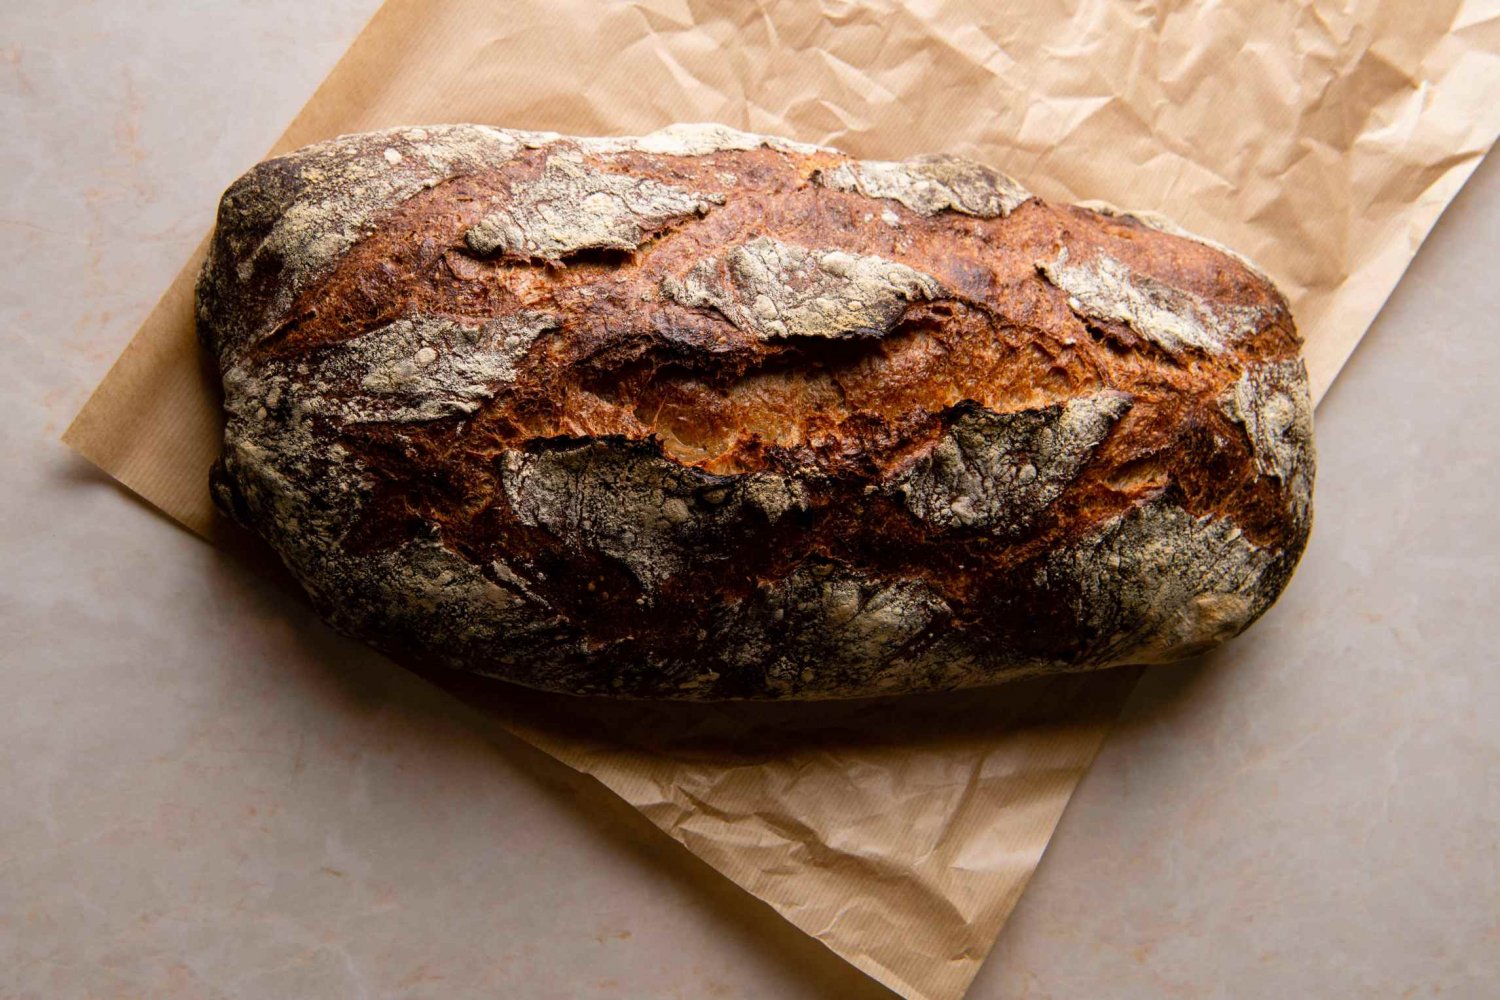 こちらが枕カンパーニュ100g 250円。名前に負けない、ずっしりとした存在感抜群の大きさのパンだ。